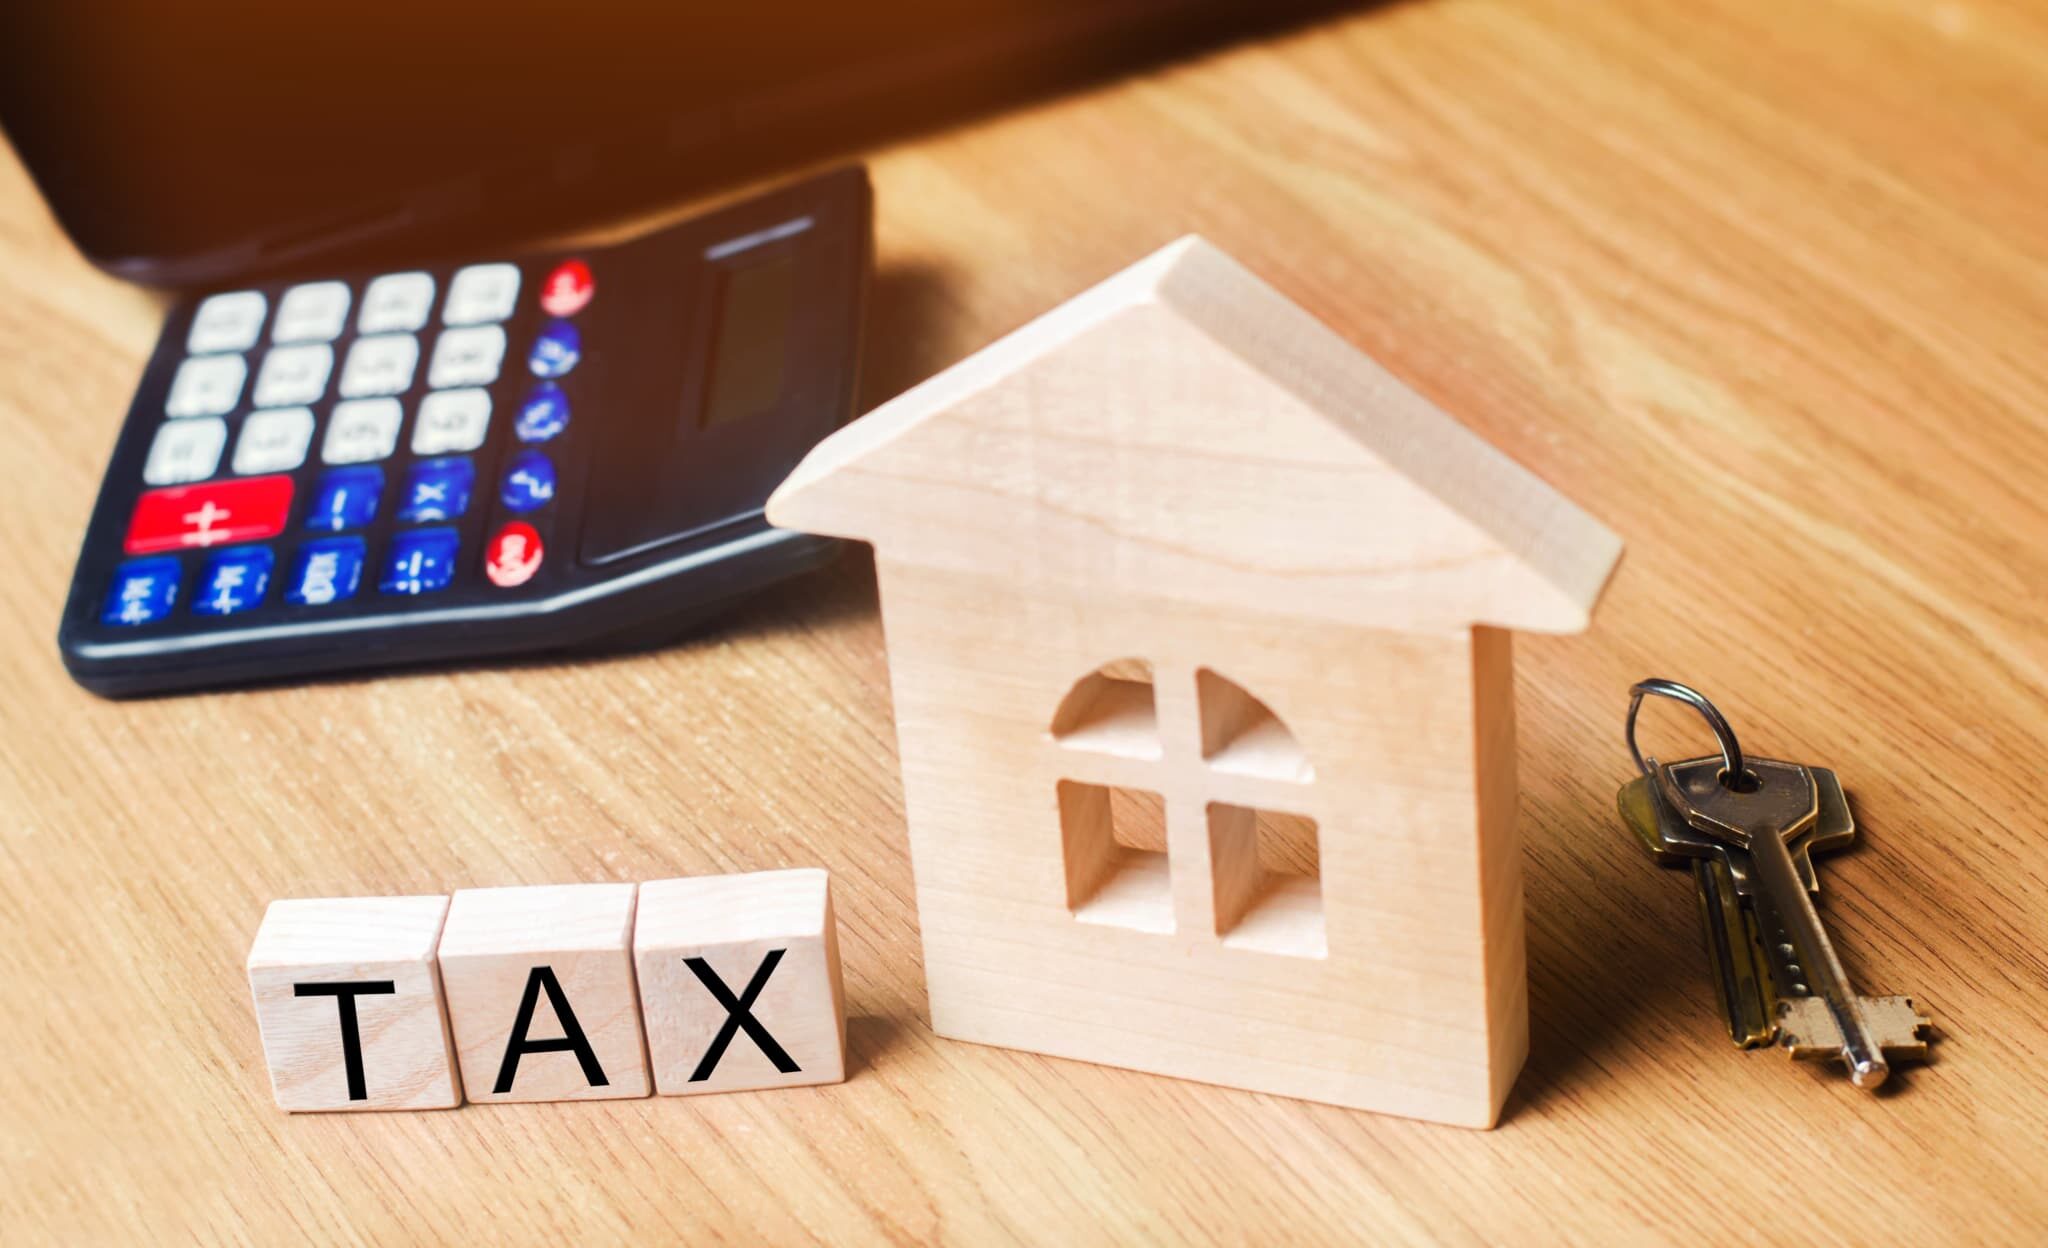 Immobilier : quelle fiscalité choisir pour déclarer les loyers perçus ?